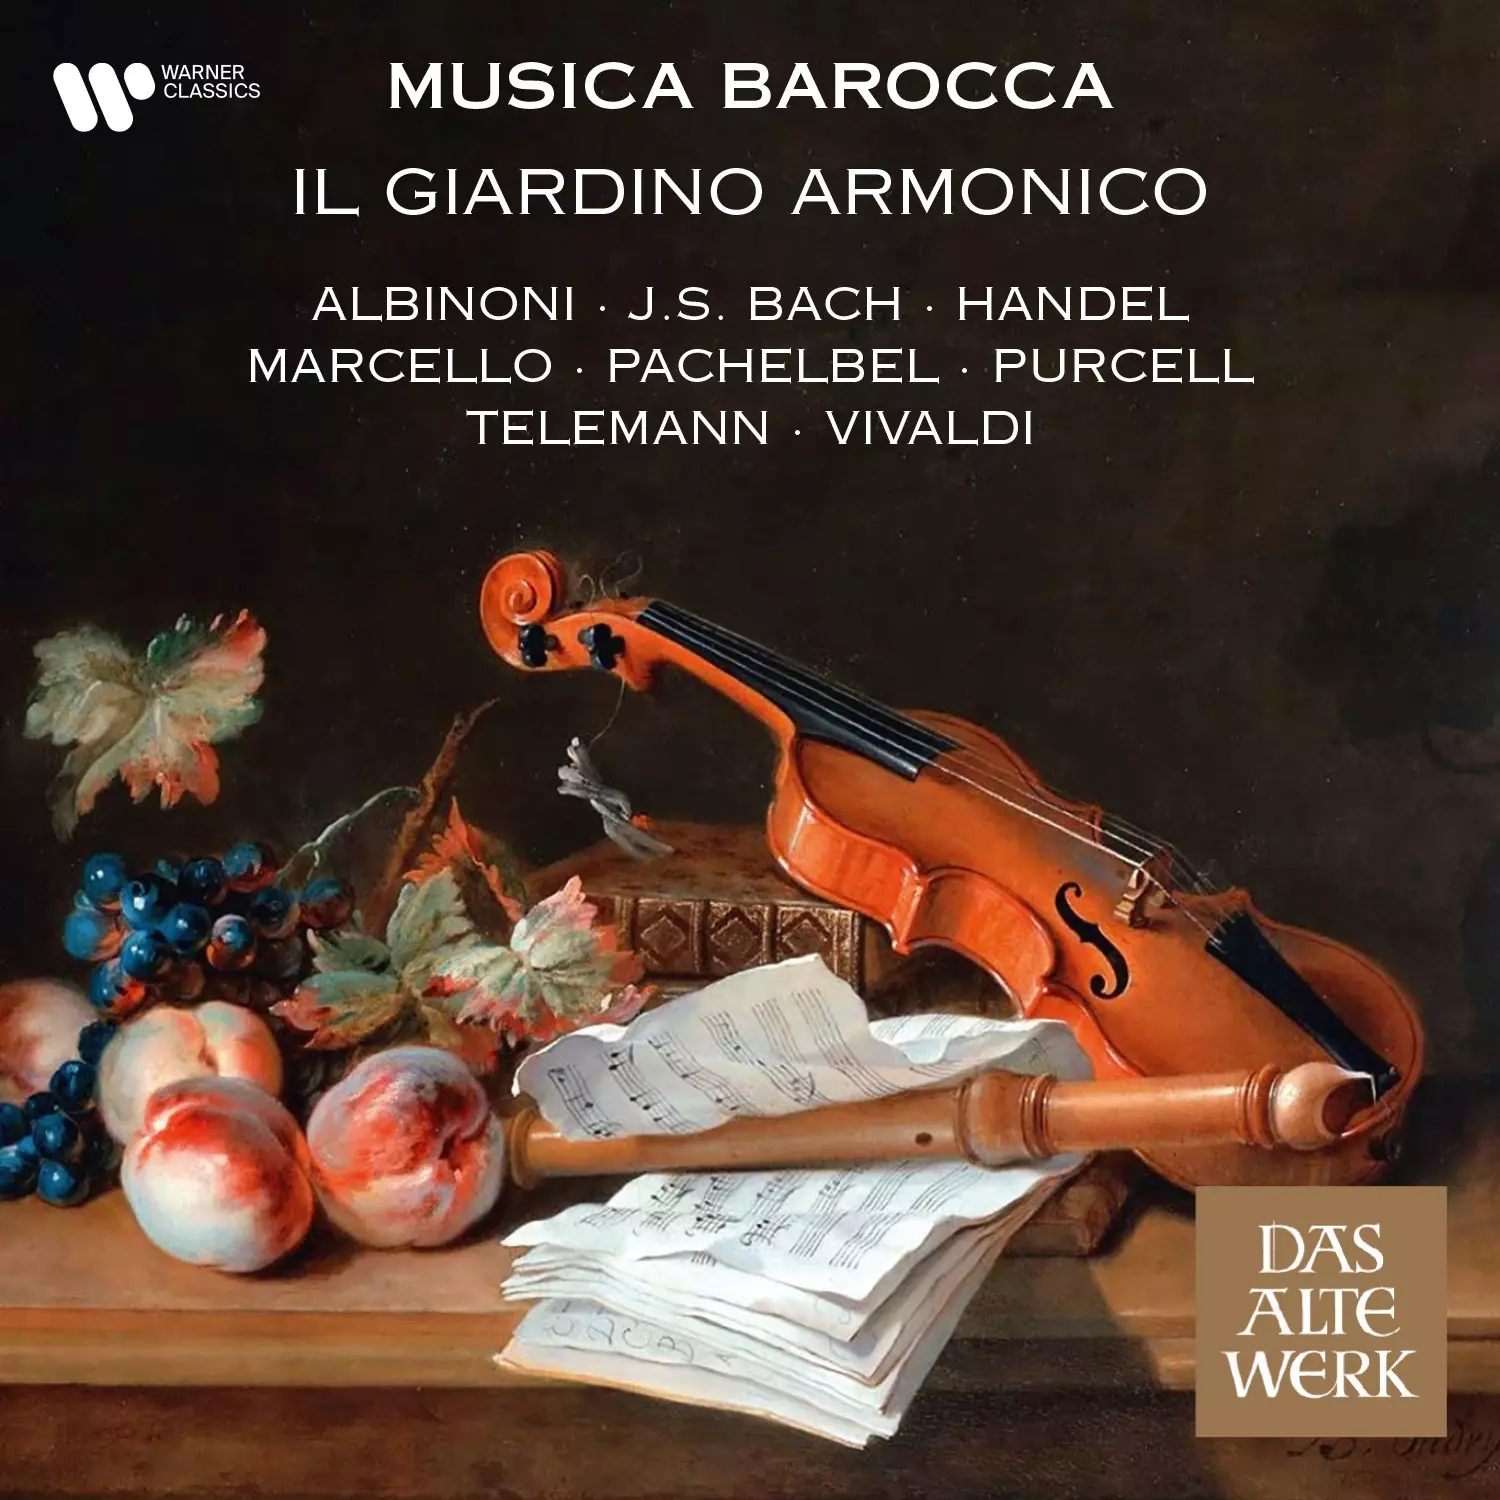 Il Giardino Armonico - Musica barocca - Baroque Masterpieces